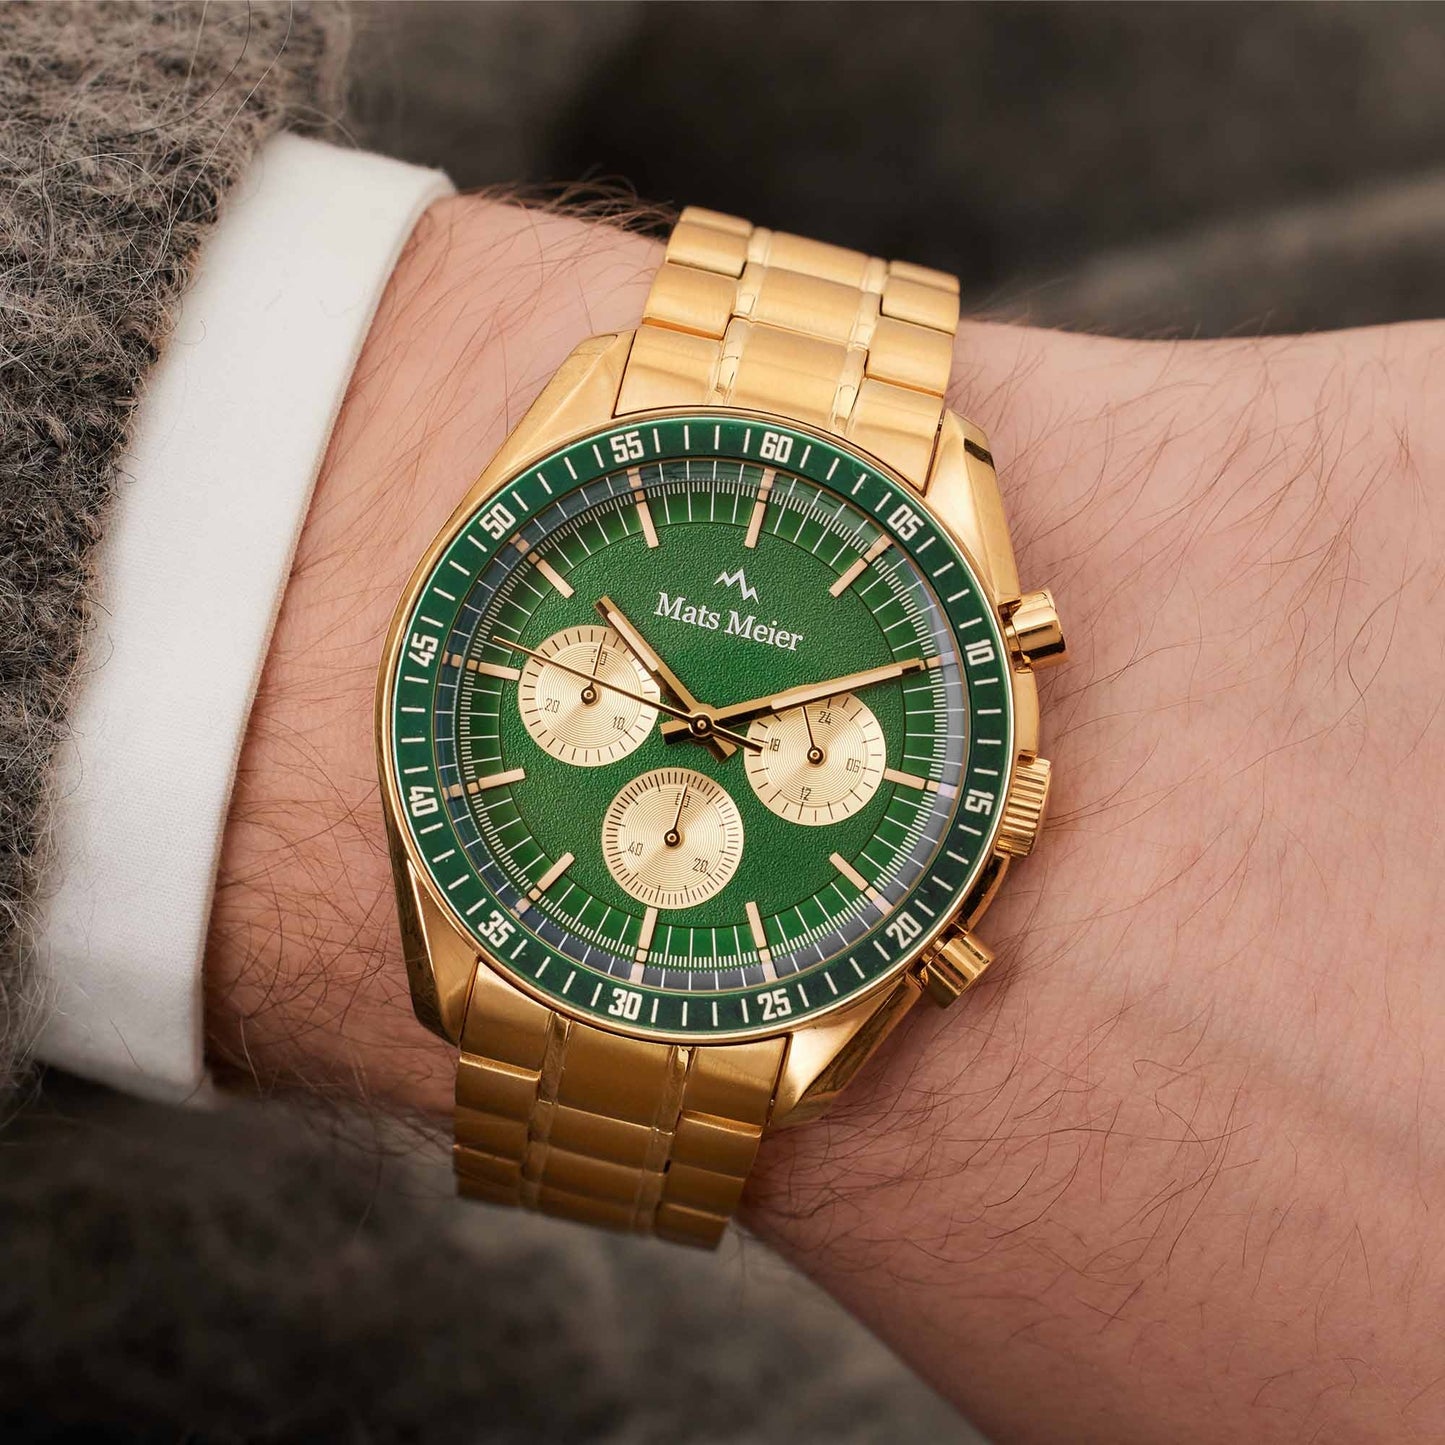 Arosa Racing cronografo orologio da uomo color oro e verde